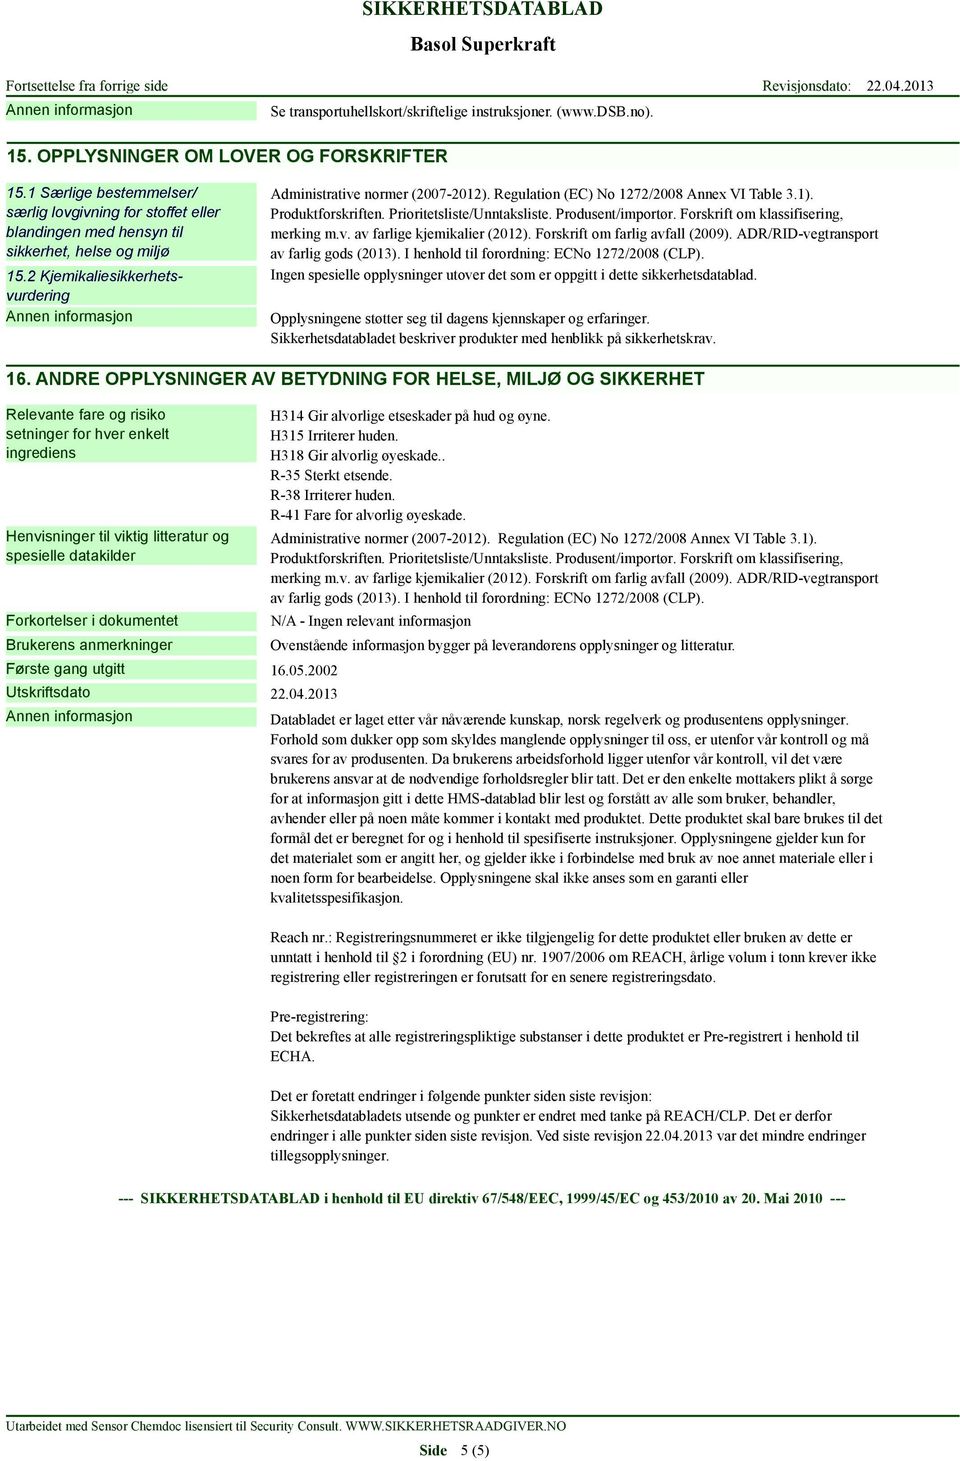 Regulation (EC) No 1272/2008 Annex VI Table 3.1). Produktforskriften. Prioritetsliste/Unntaksliste. Produsent/importør. Forskrift om klassifisering, merking m.v. av farlige kjemikalier (2012).